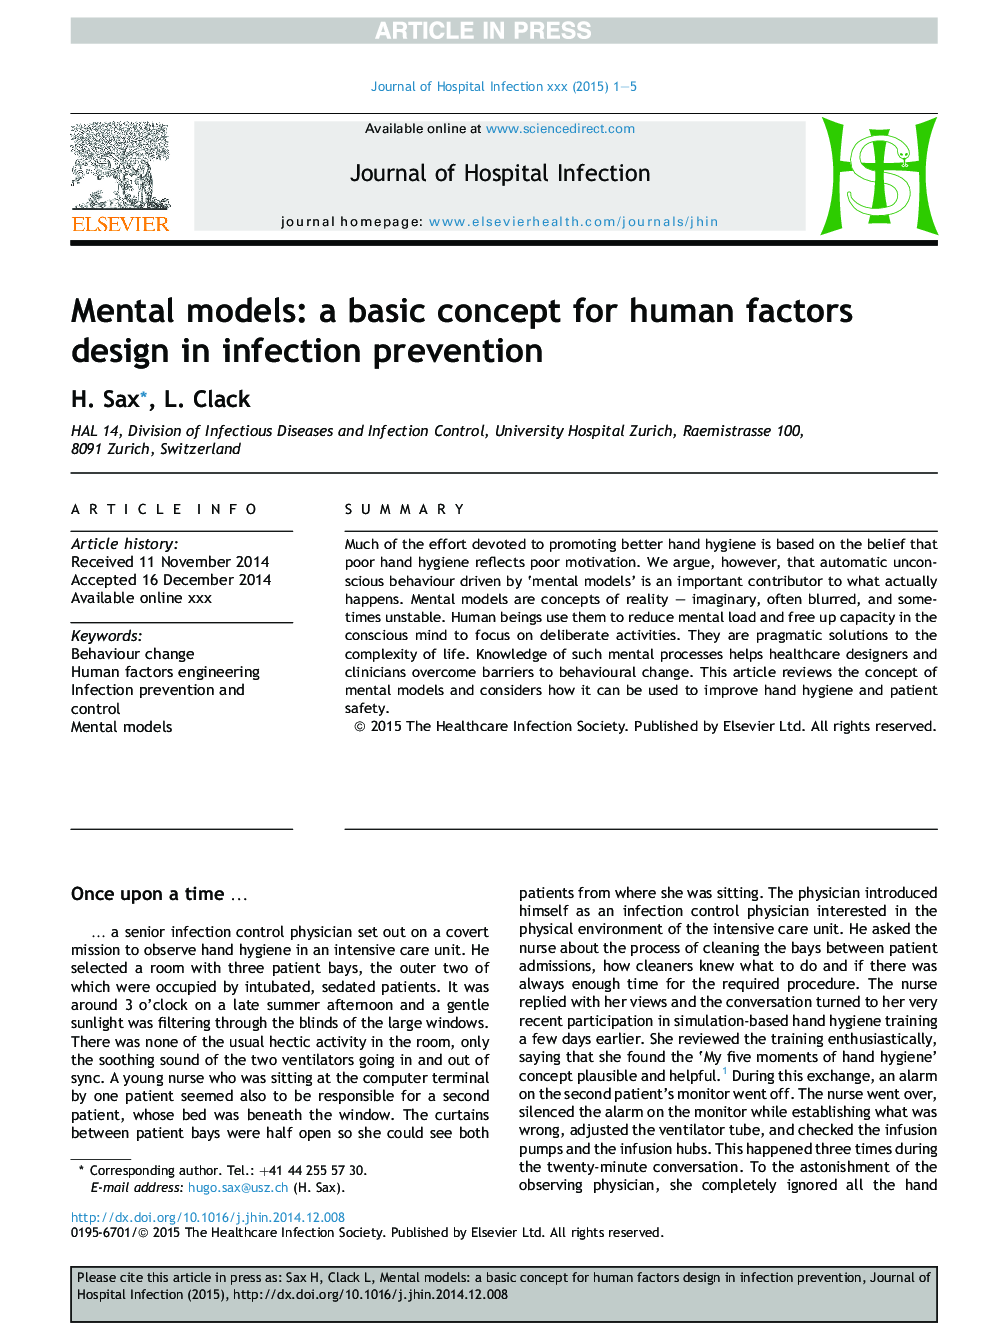 مدل های ذهنی: یک مفهوم اساسی برای طراحی عوامل انسانی در پیشگیری از عفونت است 